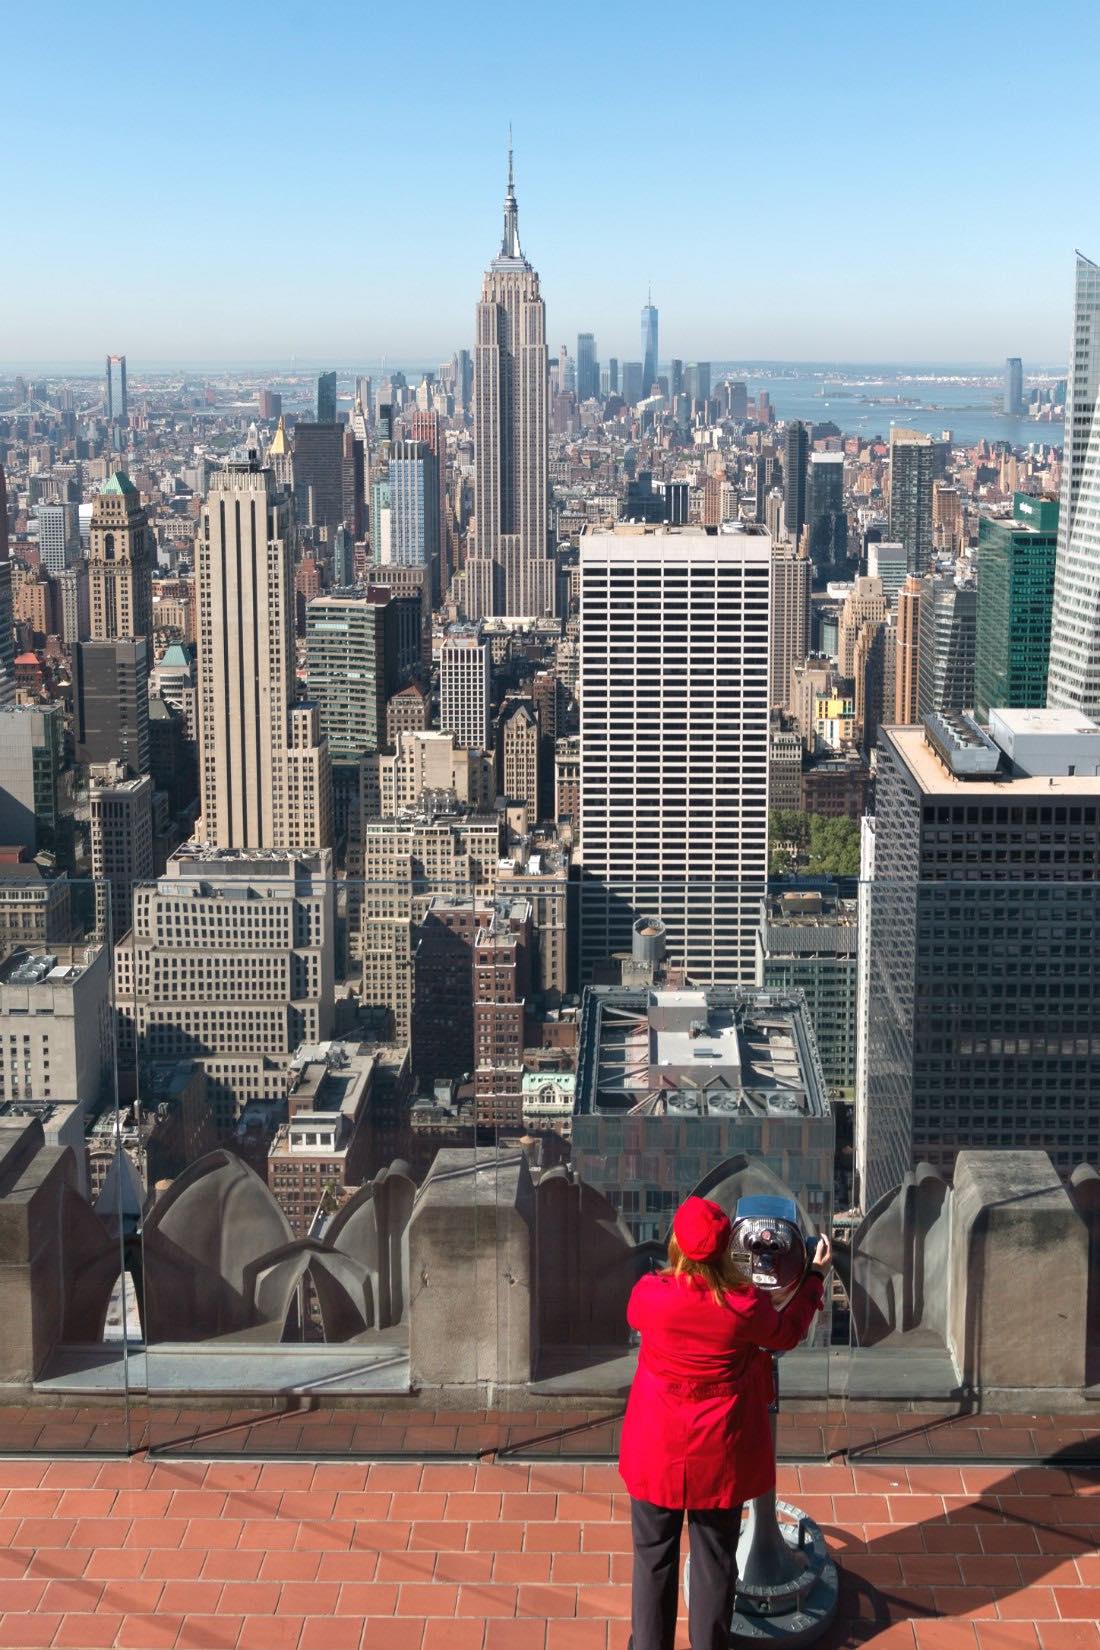 Hol dir die New York Reise Tipps zur besten Aussichtsplattform: Top of the Rock (Rockefeller Center), One World Observatory (One World Trade Center), Empire State Building oder The Edge. Aussichtspunkte New York City - Infos wie Höhe, Tickets und Wartezeit. #NewYork #NYC #Urlaub #Reisen 